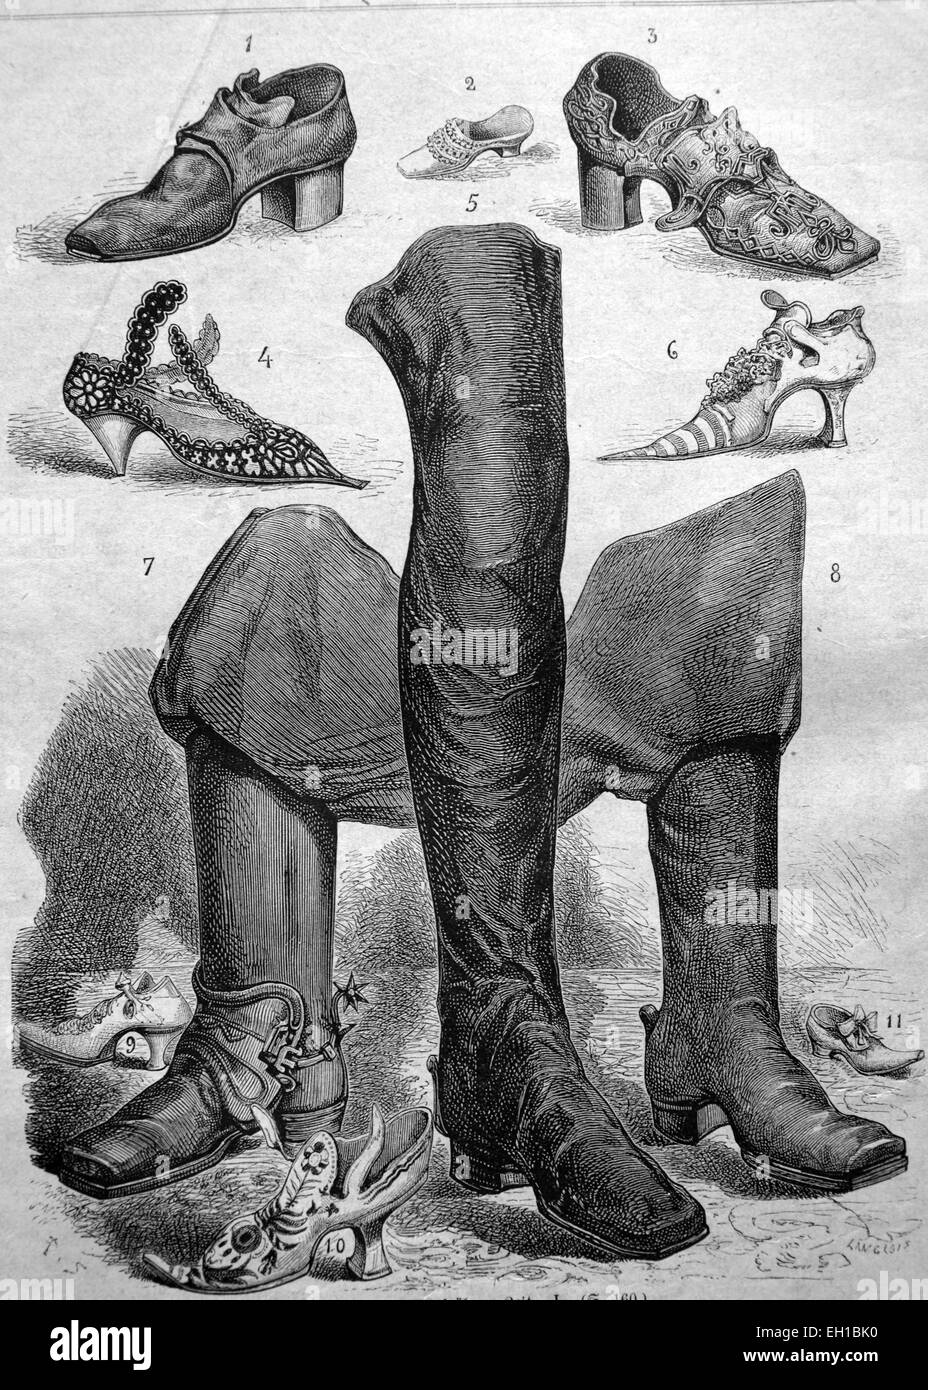 Schuh-Mode aus dem Mittelalter, 1 - Gentry Schuh 2 - Kinderschuh, 3 Stiefel - Schuh von Höfling, 4 - Damenschuhe von Gericht von Louis XV, 5 - Stiefel aus dem 16. Jahrhundert, 6 - Damenschuh aus der Zeit der Medici, 7 - Reitstiefel, 8-, 9 - Damenschuh unter Louis XIV, 10 - Damenschuh von Gericht von Louis XV , 11 - Schuh eines Prinzen aus der Zeit von Louis XII, historische Abbildung, 1877 Stockfoto